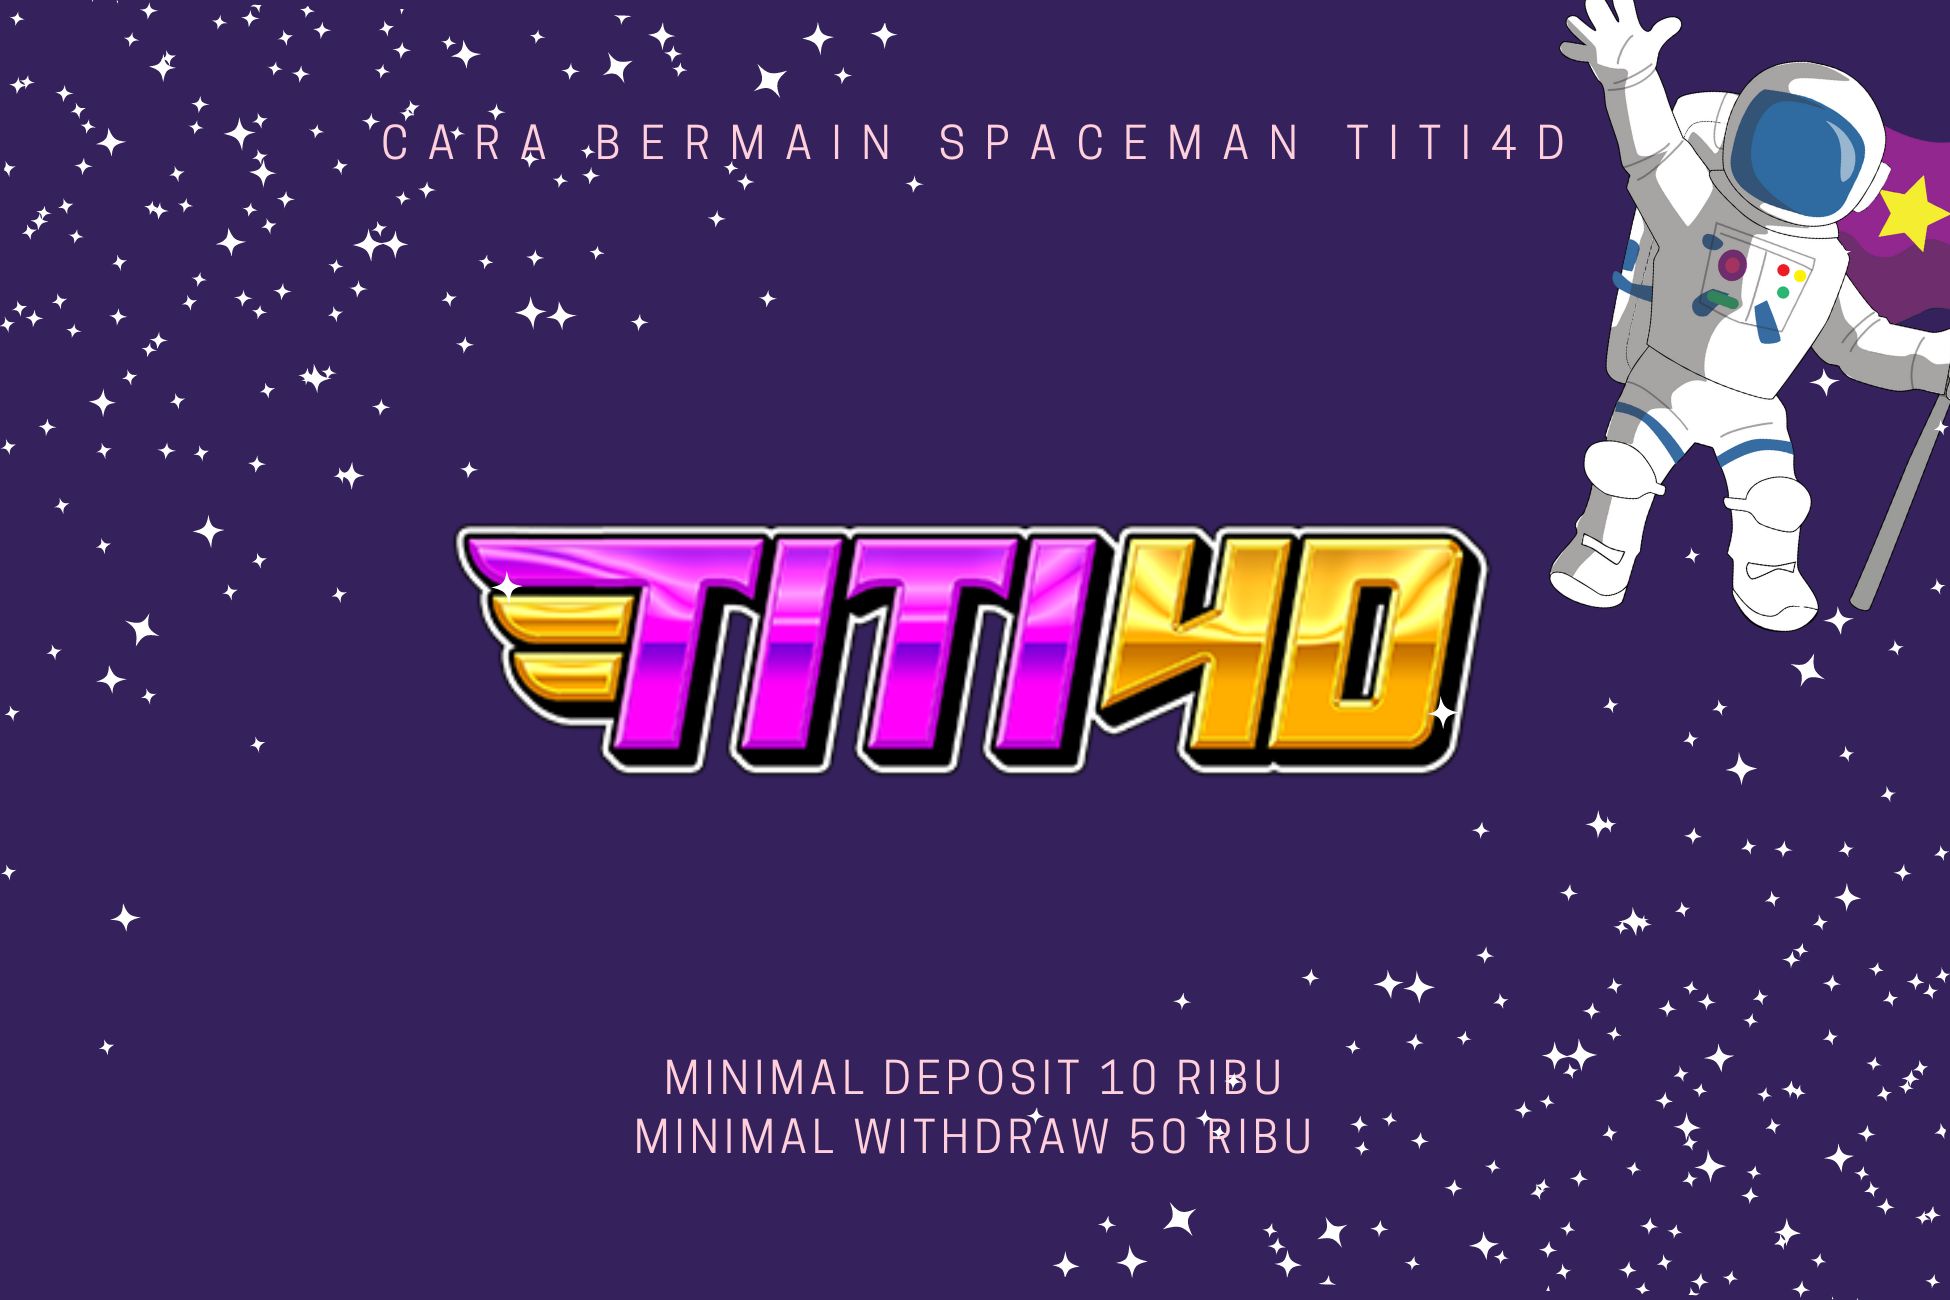 Cara Bermain Spaceman Titi4D